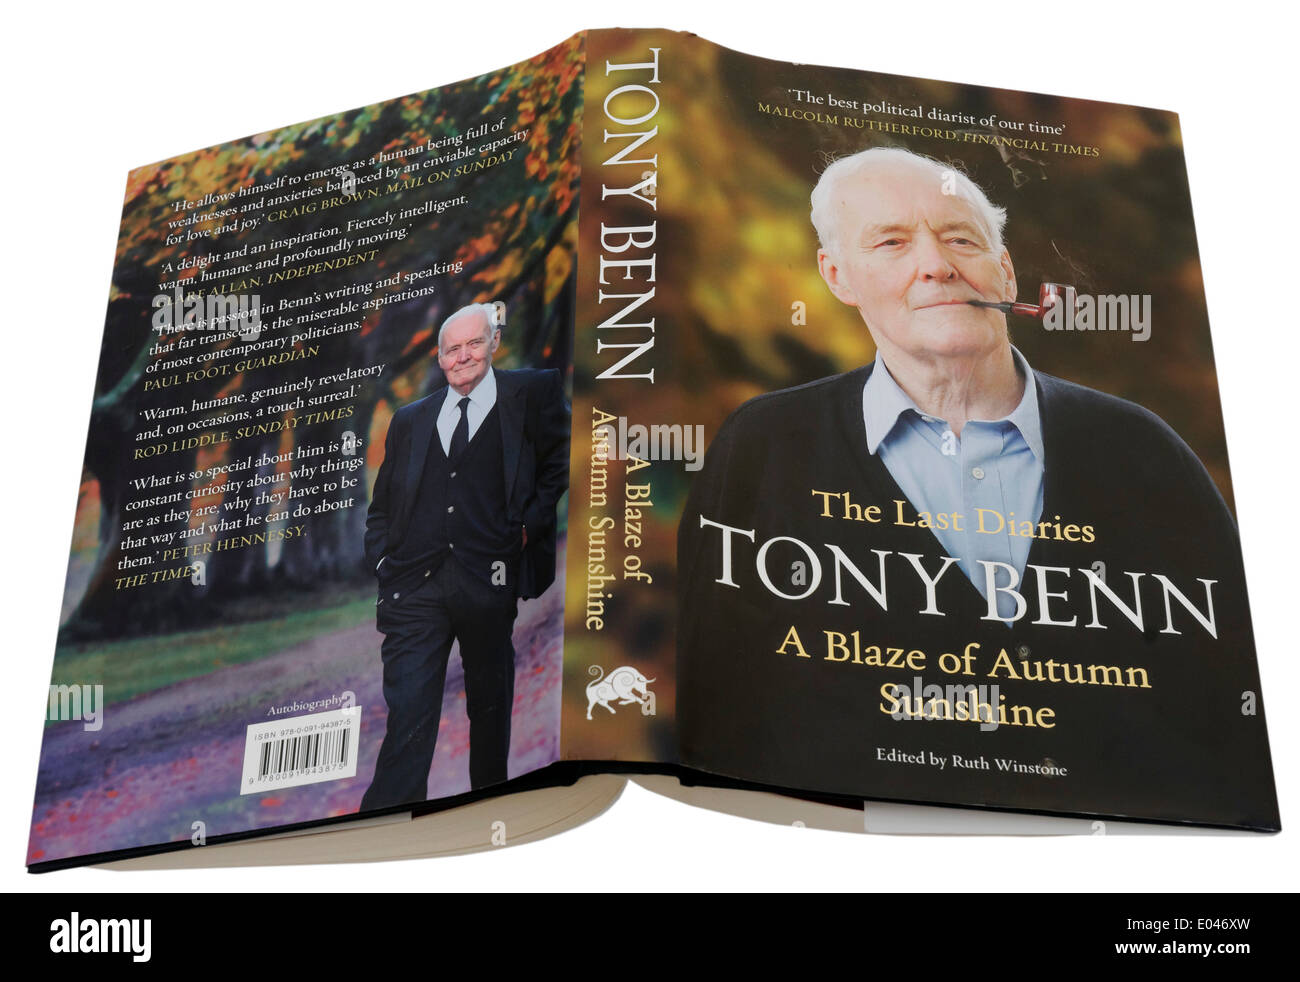 Ein Blaze of Herbst Sunshine von Tony Benn, den letzten Band seiner politischen Tagebücher Stockfoto